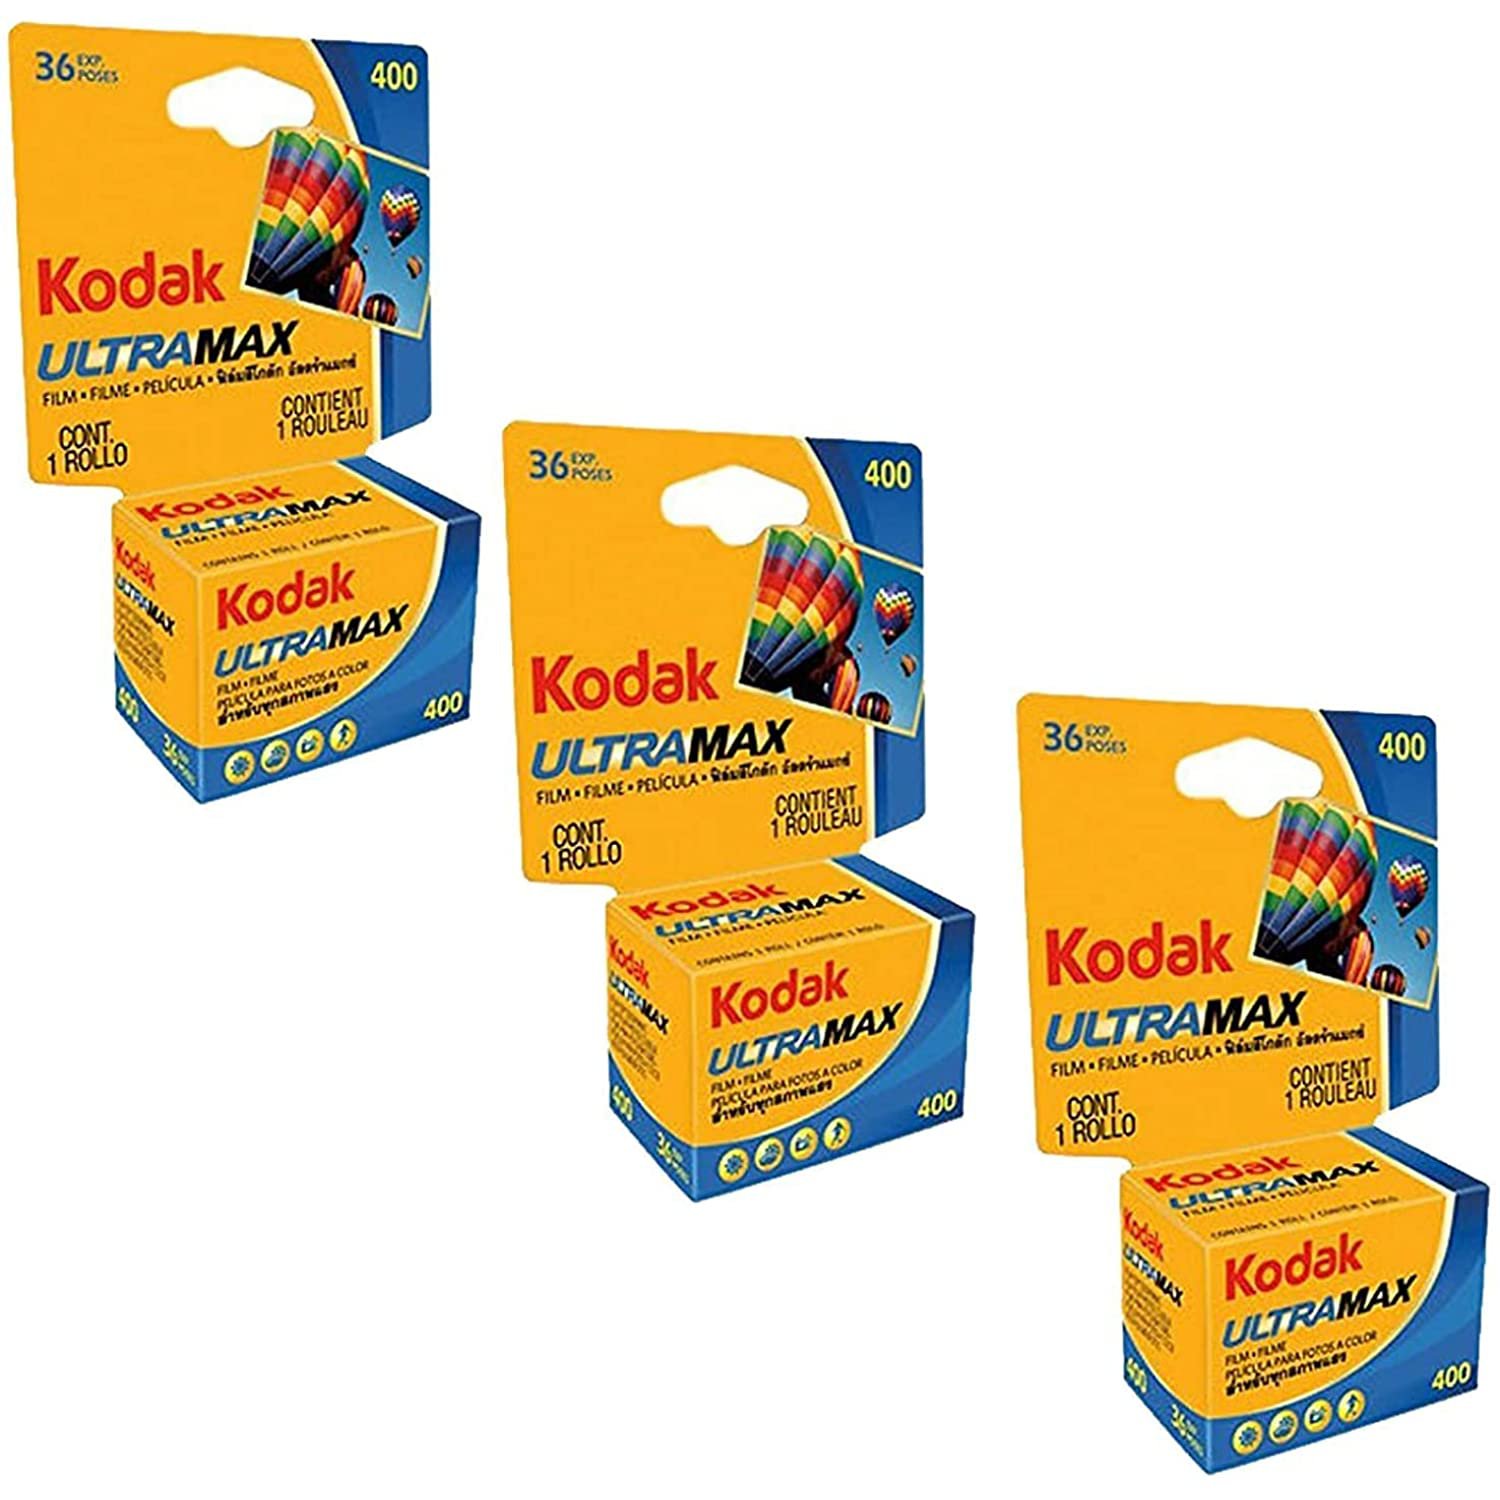 Kodak Ultramax 400 Color Print Film 36 Exp. 35mm DX 400 135-36 (108 Pics) (Pack of 3), Bas